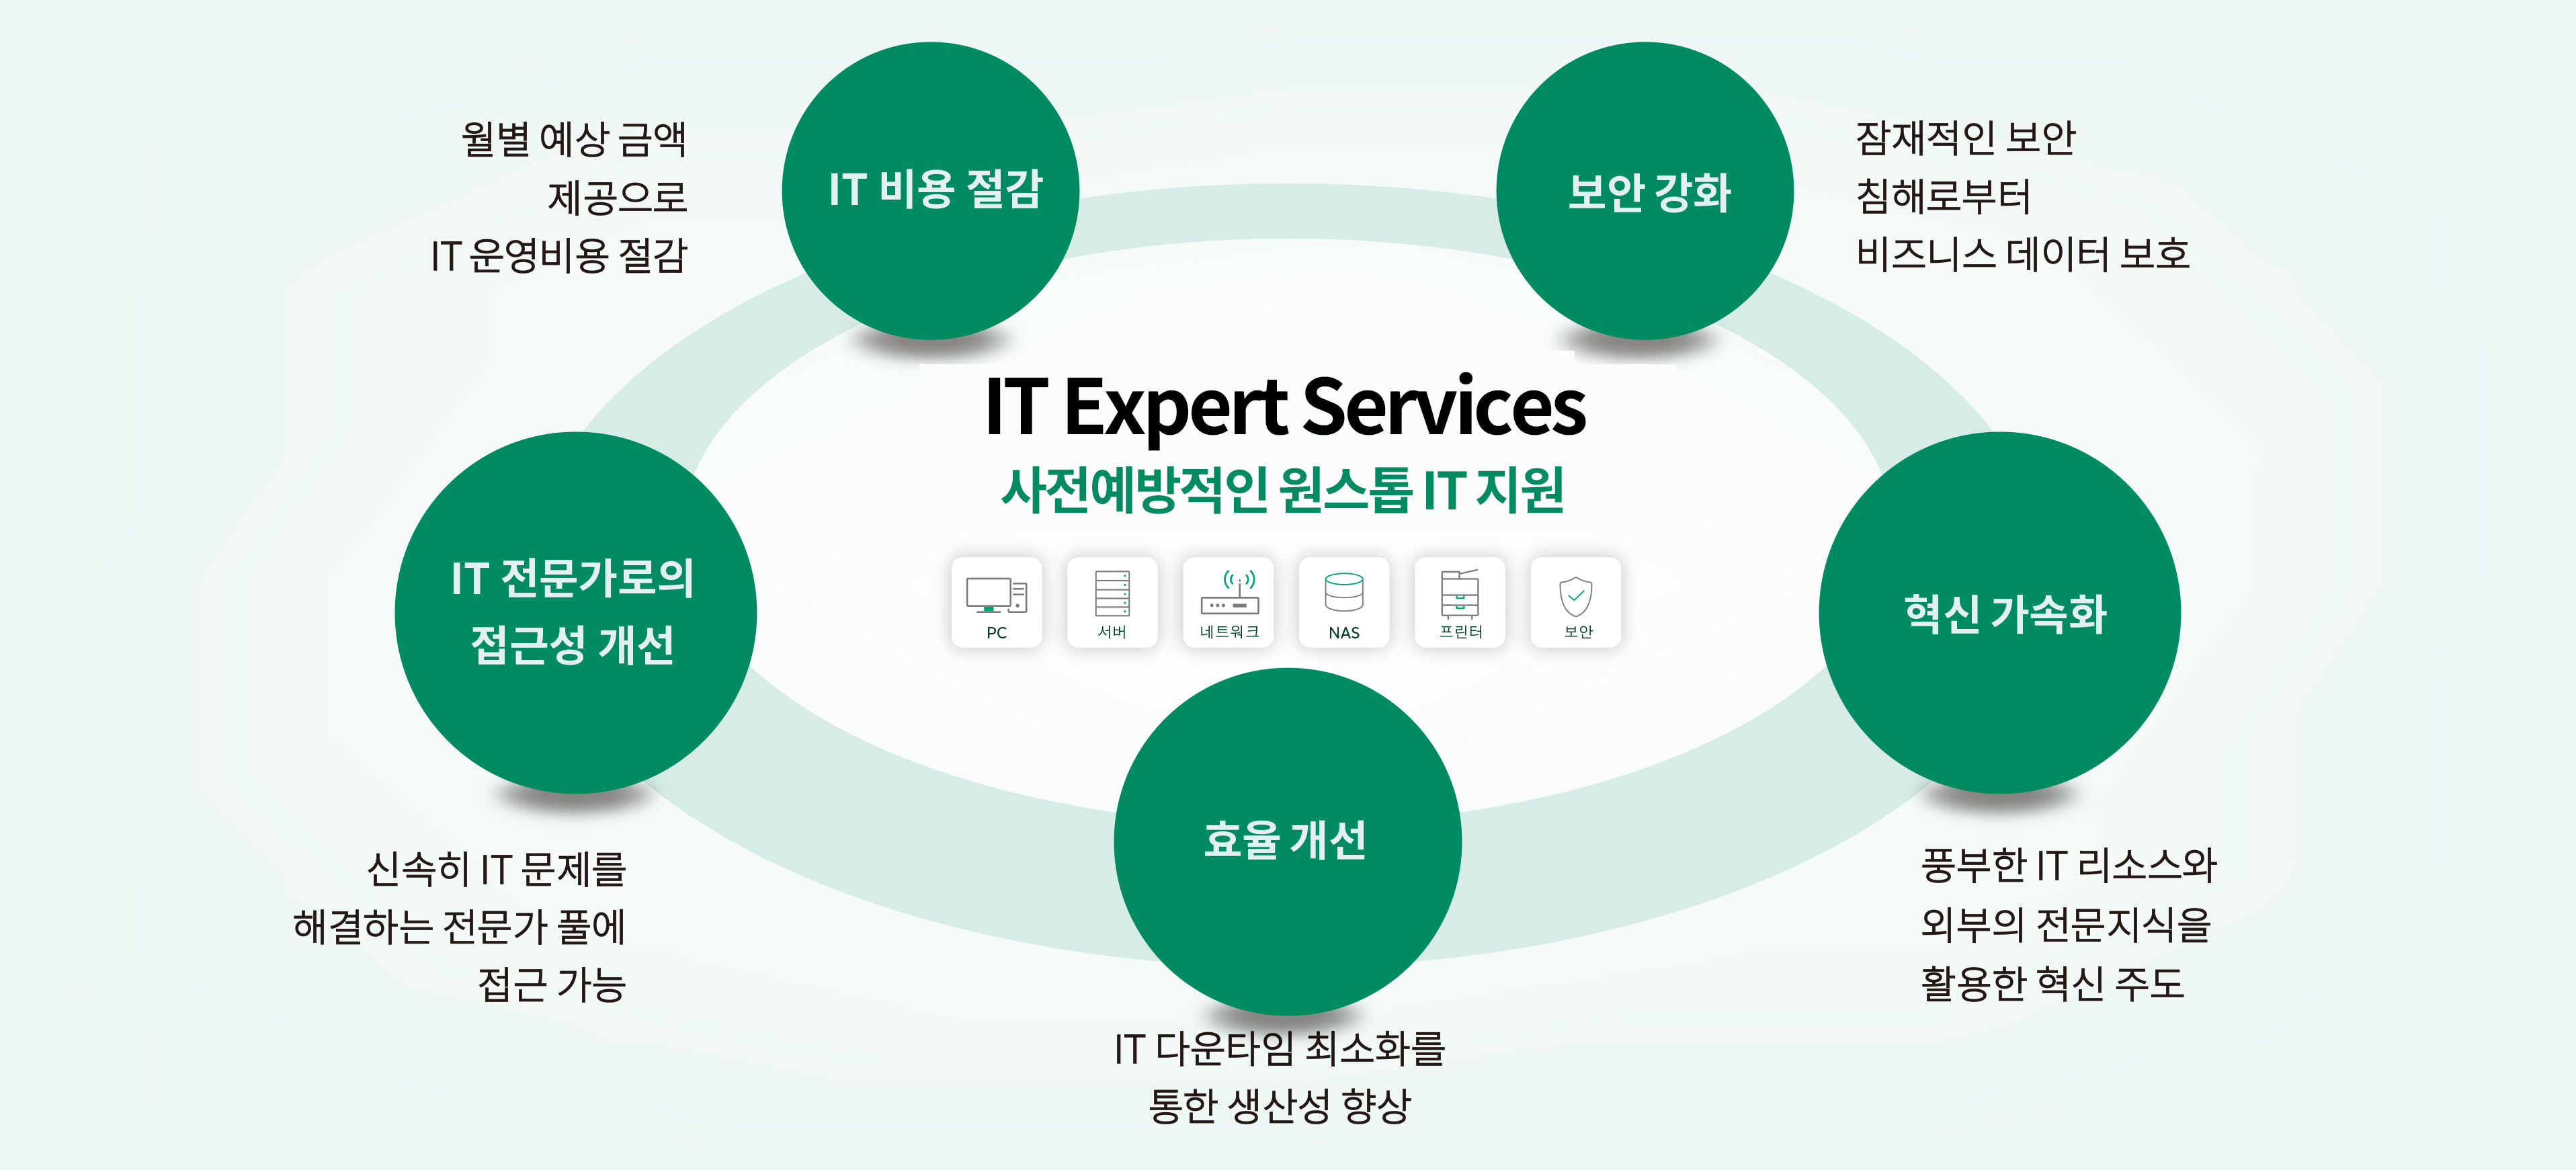 통합 IT Expert Services: A One-stop IT Support